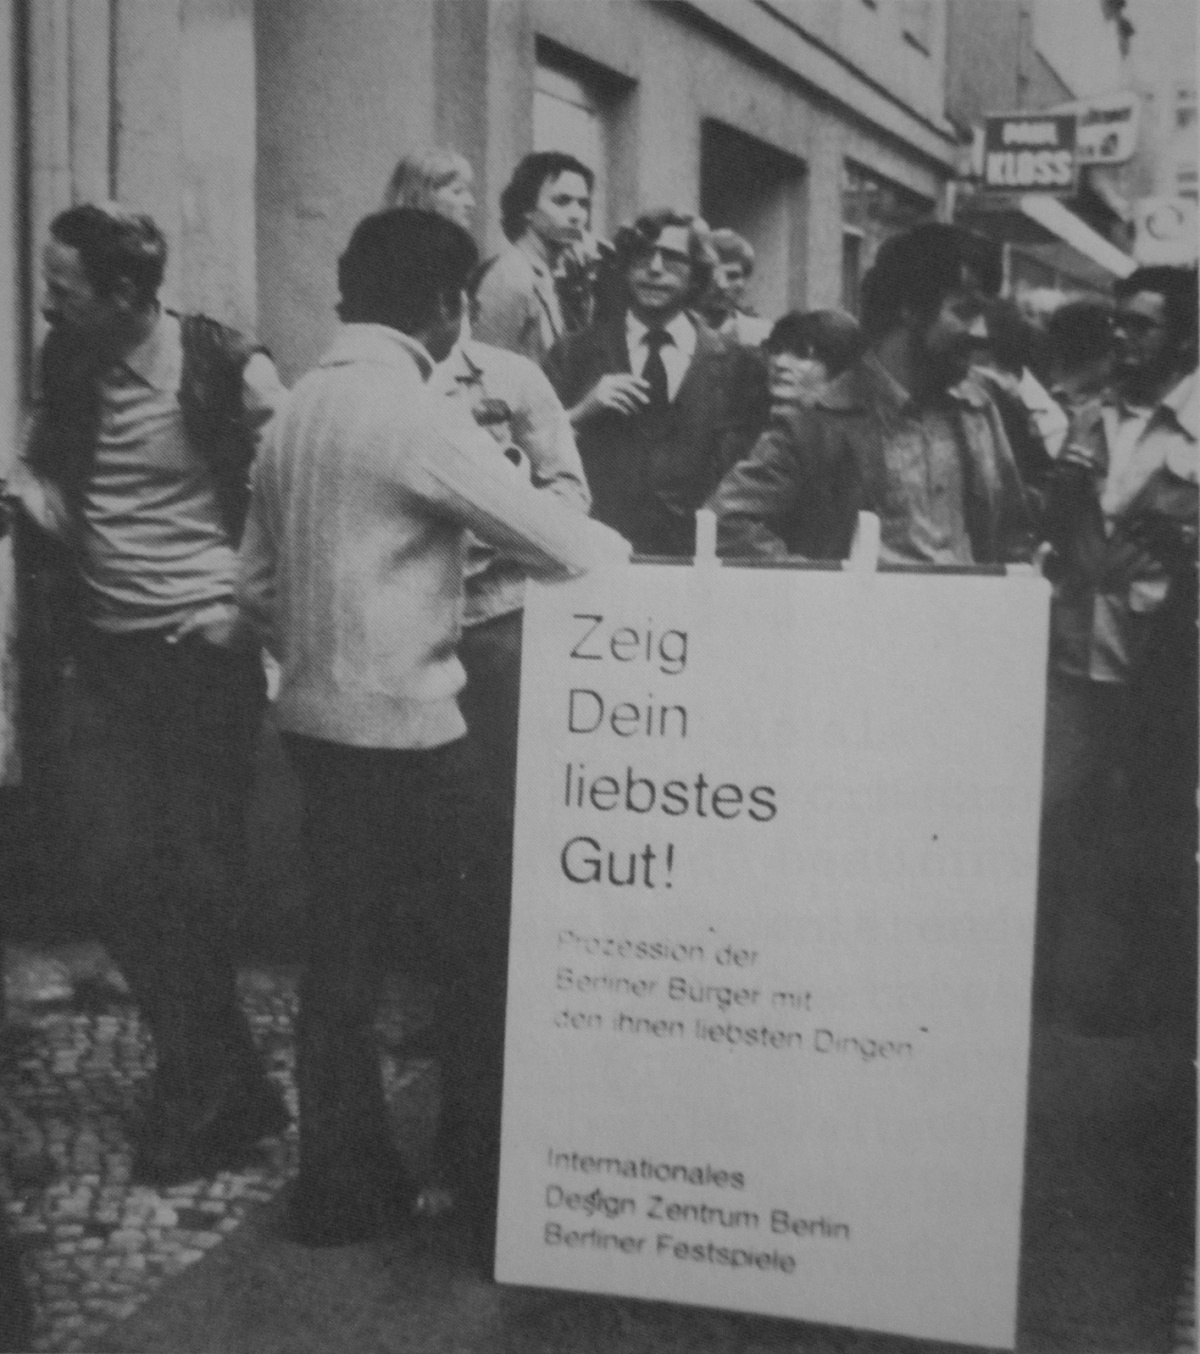 Persönlichkeit werden... Porträt durch Darstellung von Gegenständen, die für eine Person bedeutsam sind., Bild: Persönlichkeit werden..., Ausstellungskatalog, Hamburg, 1978..